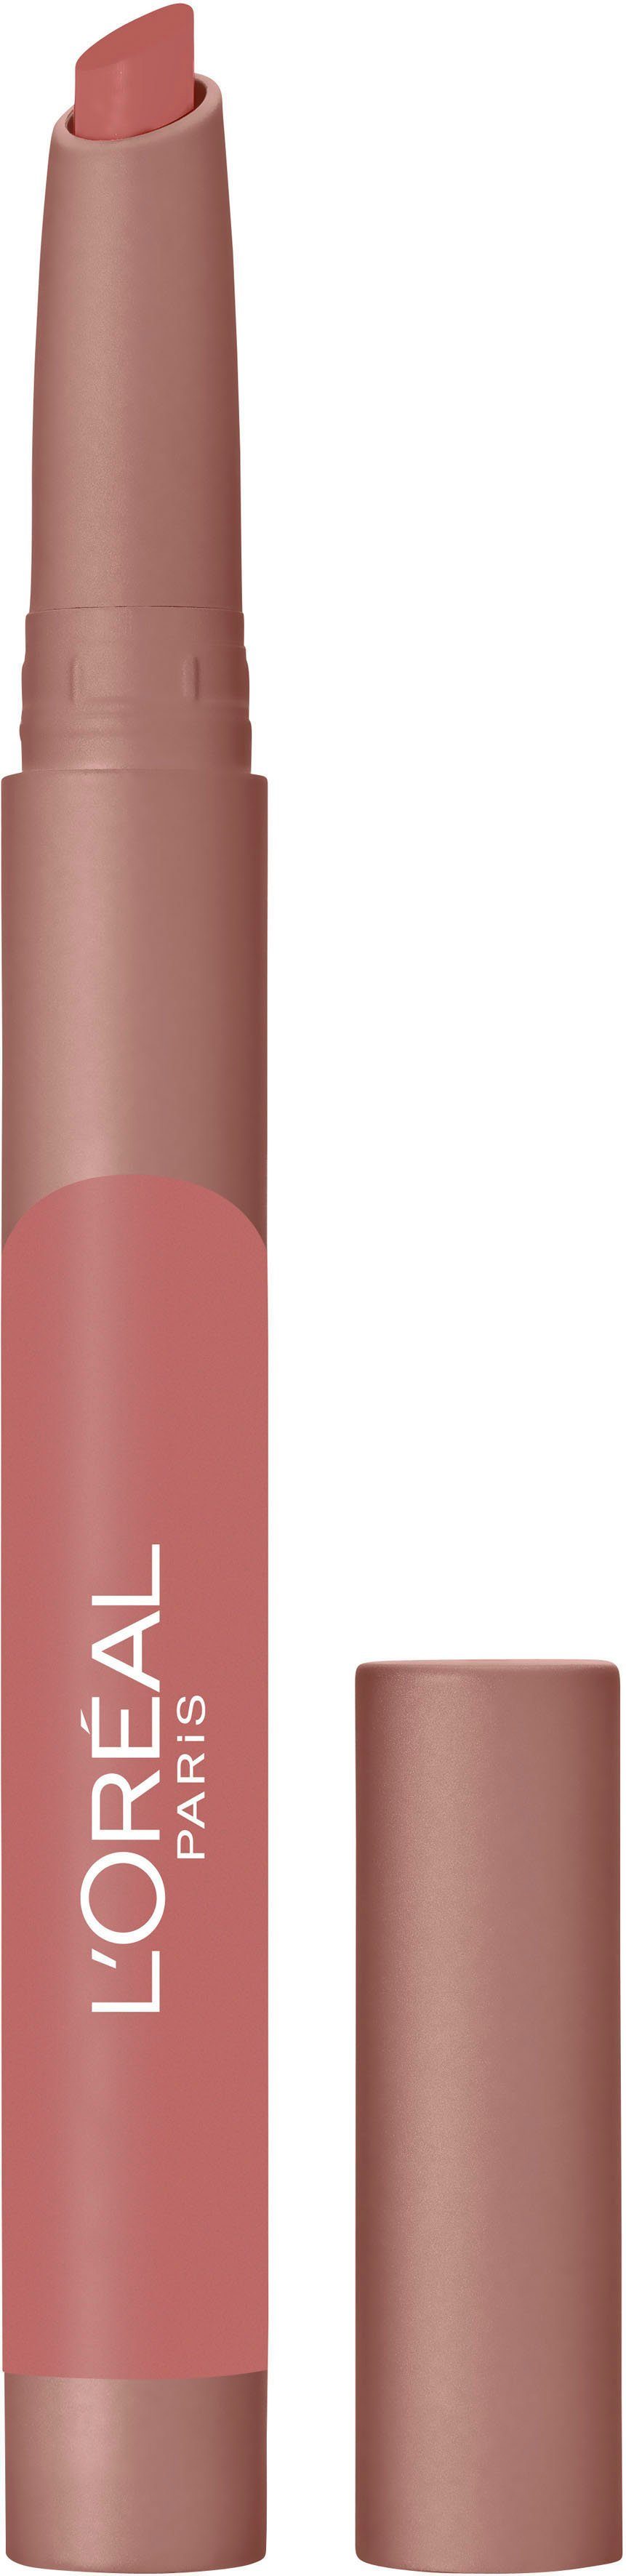 PARIS L'ORÉAL Crayon Lippenstift Caramel Matte Blondie 102 Infaillible L'ORÉAL PARIS PROFESSIONNEL Lip